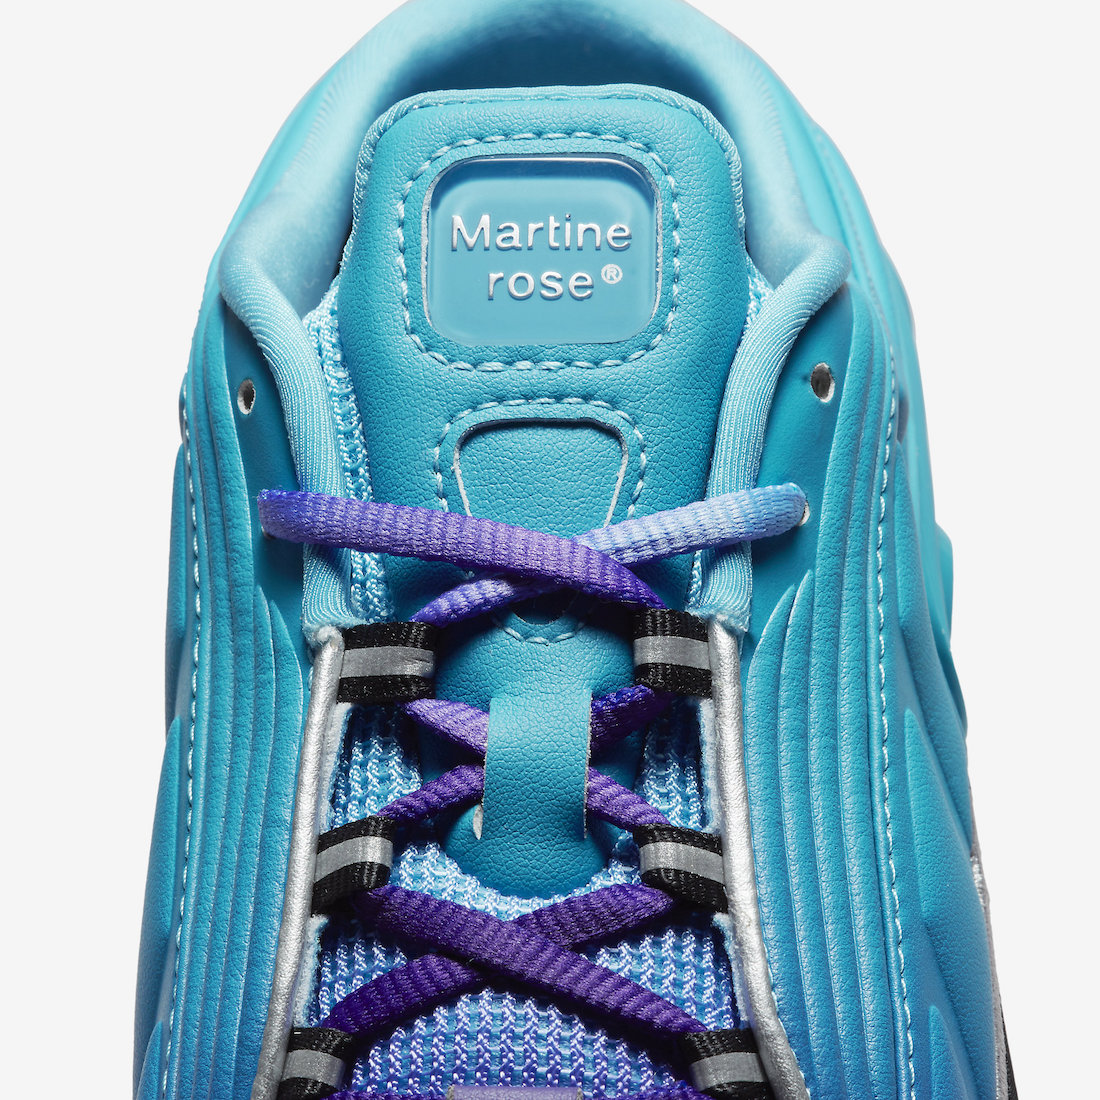 Martine Rose x Nike Shox Mule MR4 WMNS “Scuba Blue”